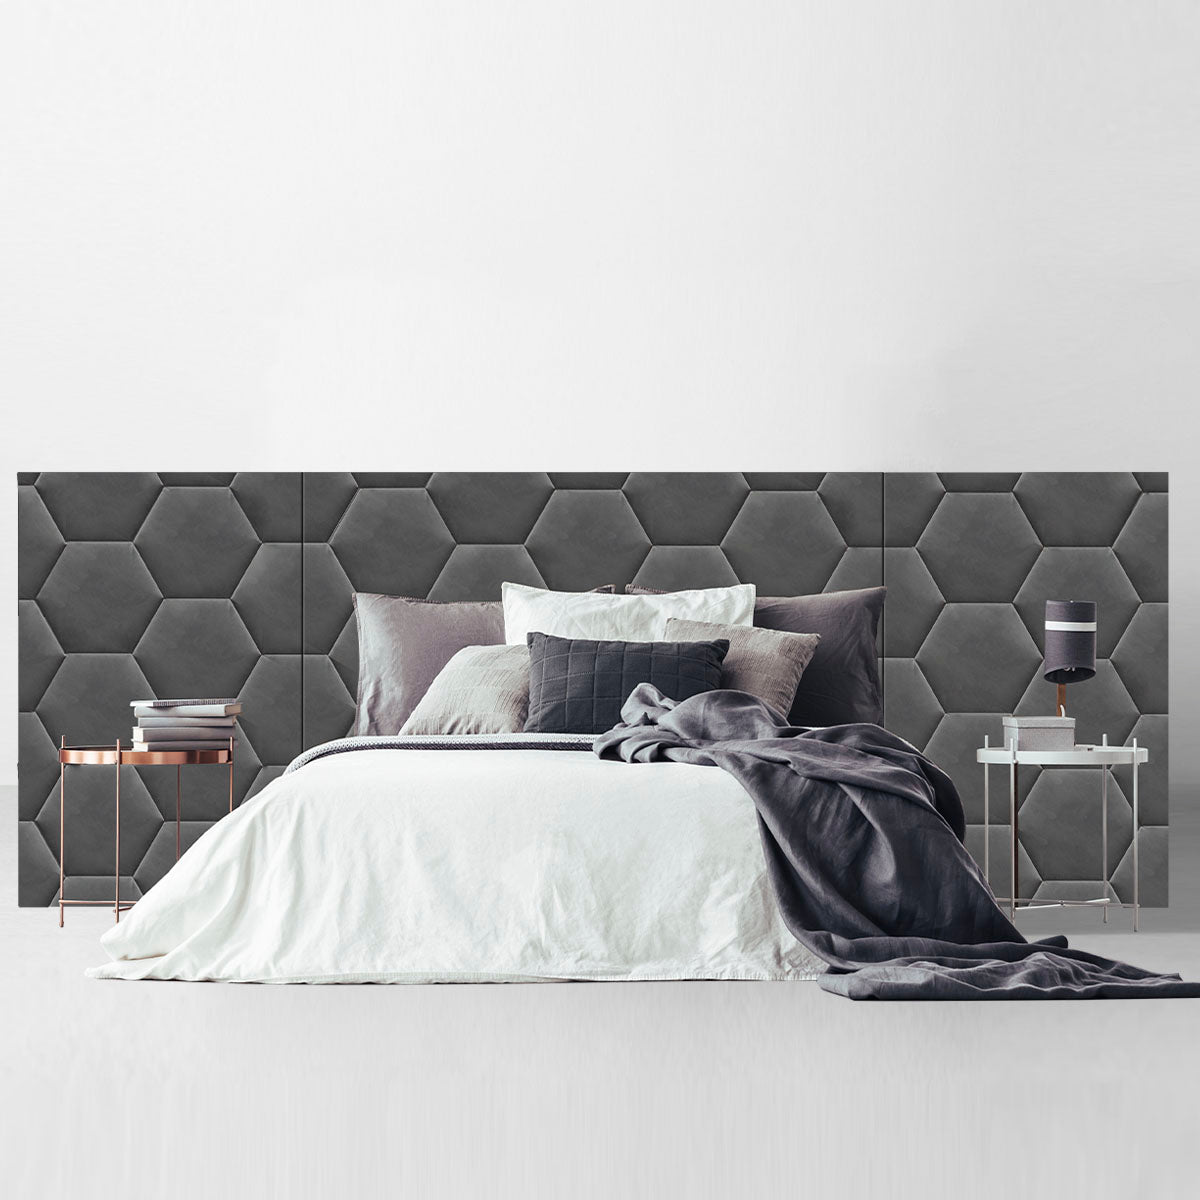 Honeycomb Artboard - Nimbus Beds